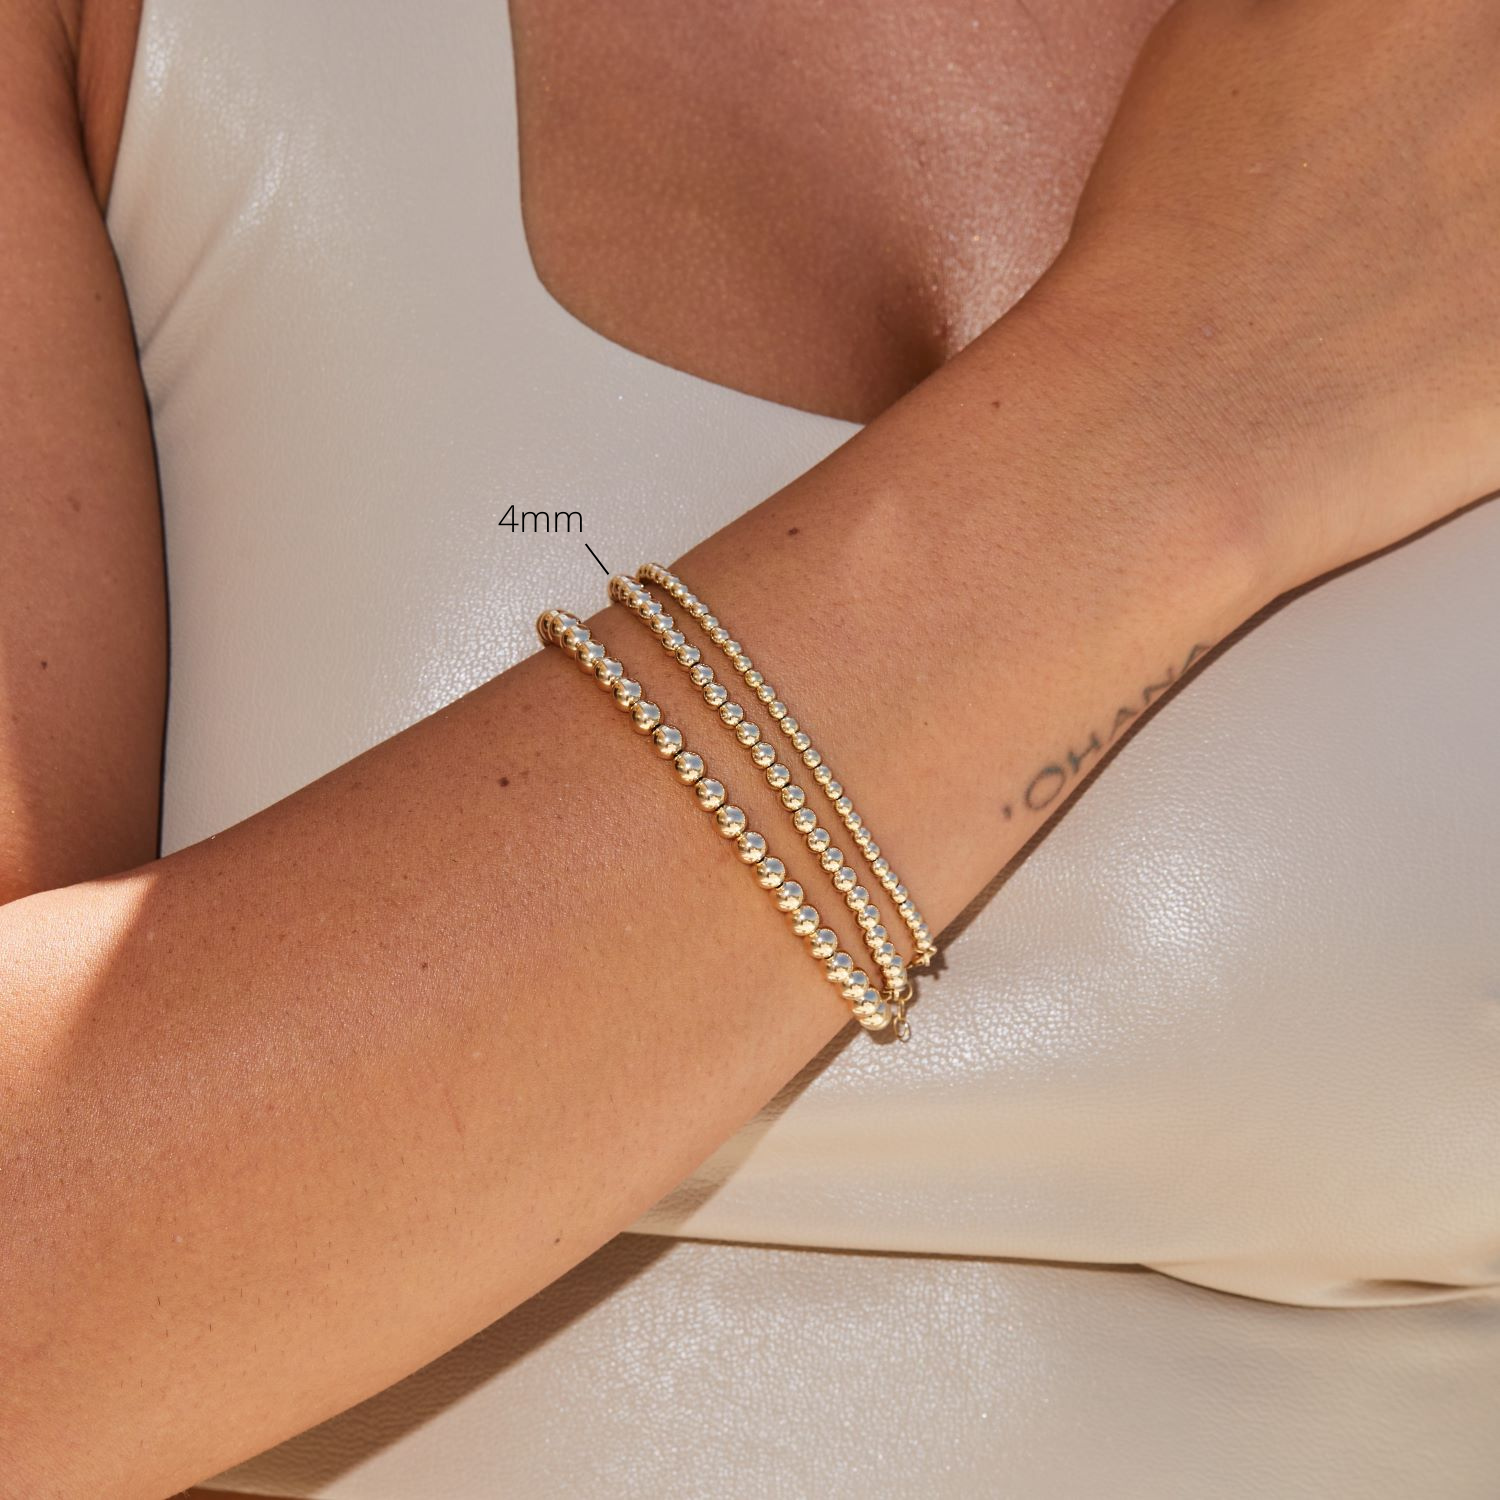 14K Solid Gold Name Bracelet, Solid Gold Letter Initial Bracelet, 18K Family Name Bracelet, Custom Made Gift for Her, Best Gift for Mother's